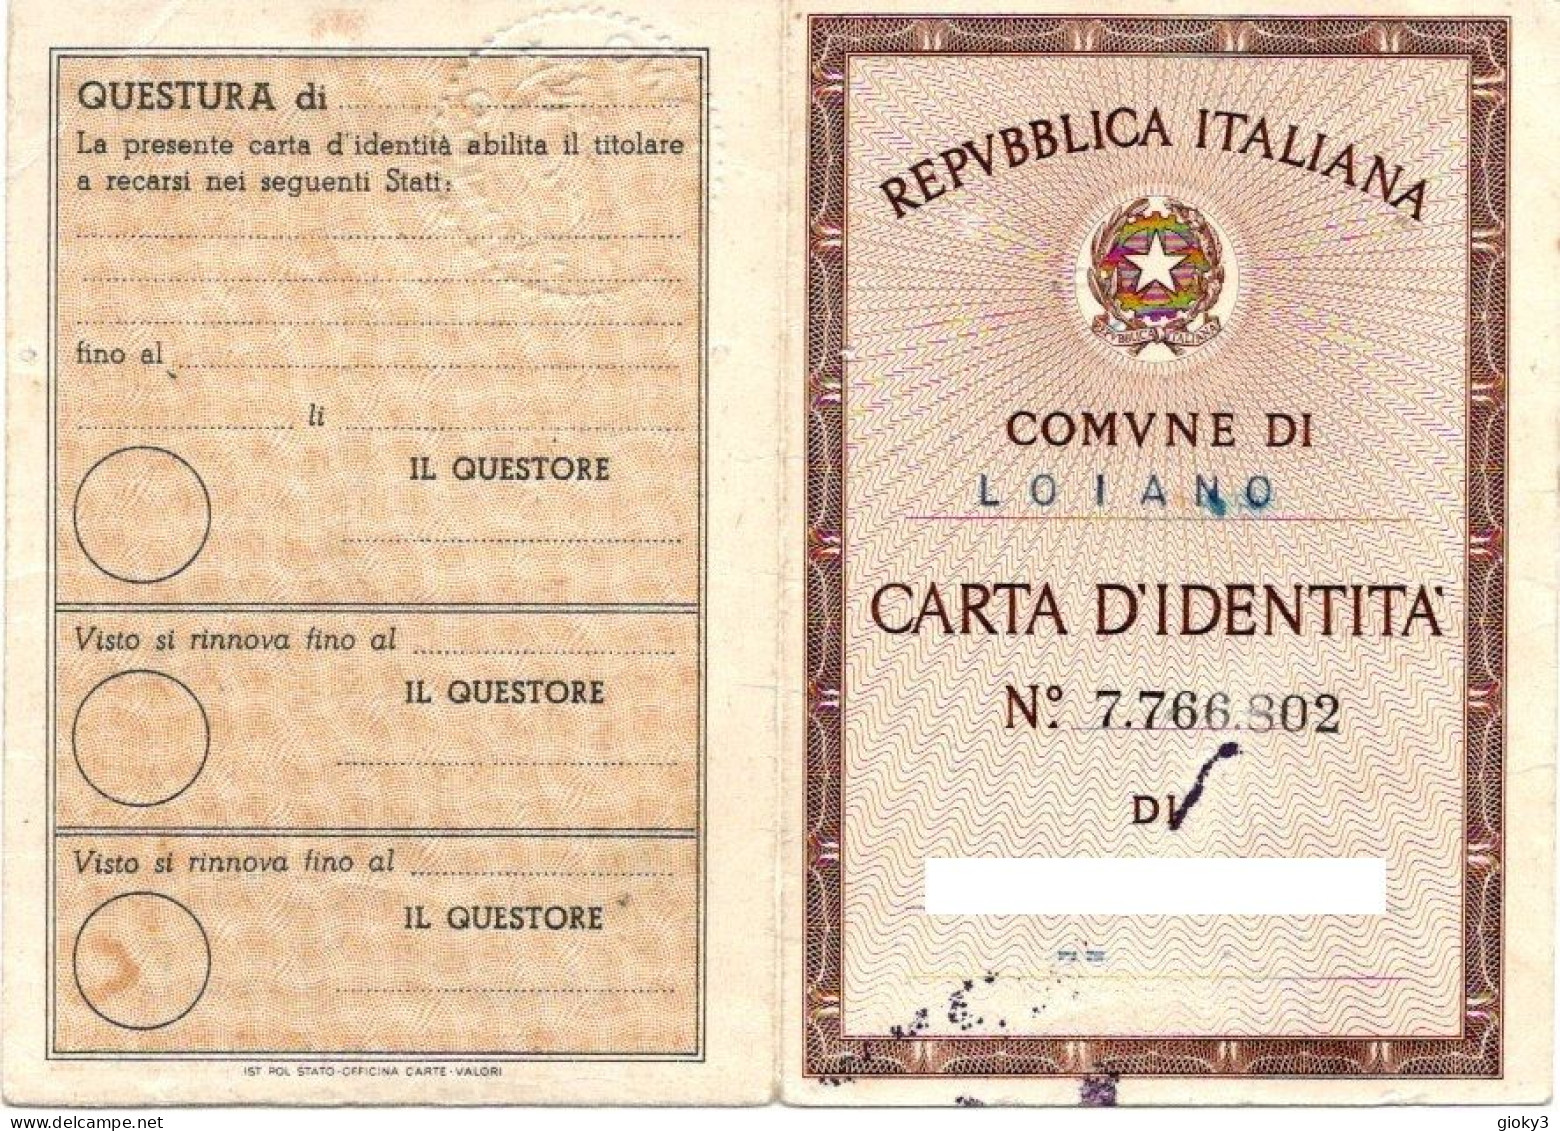 CARTA D'IDENTITA' EMESSA A LOIANO 1959 - Timbri Generalità